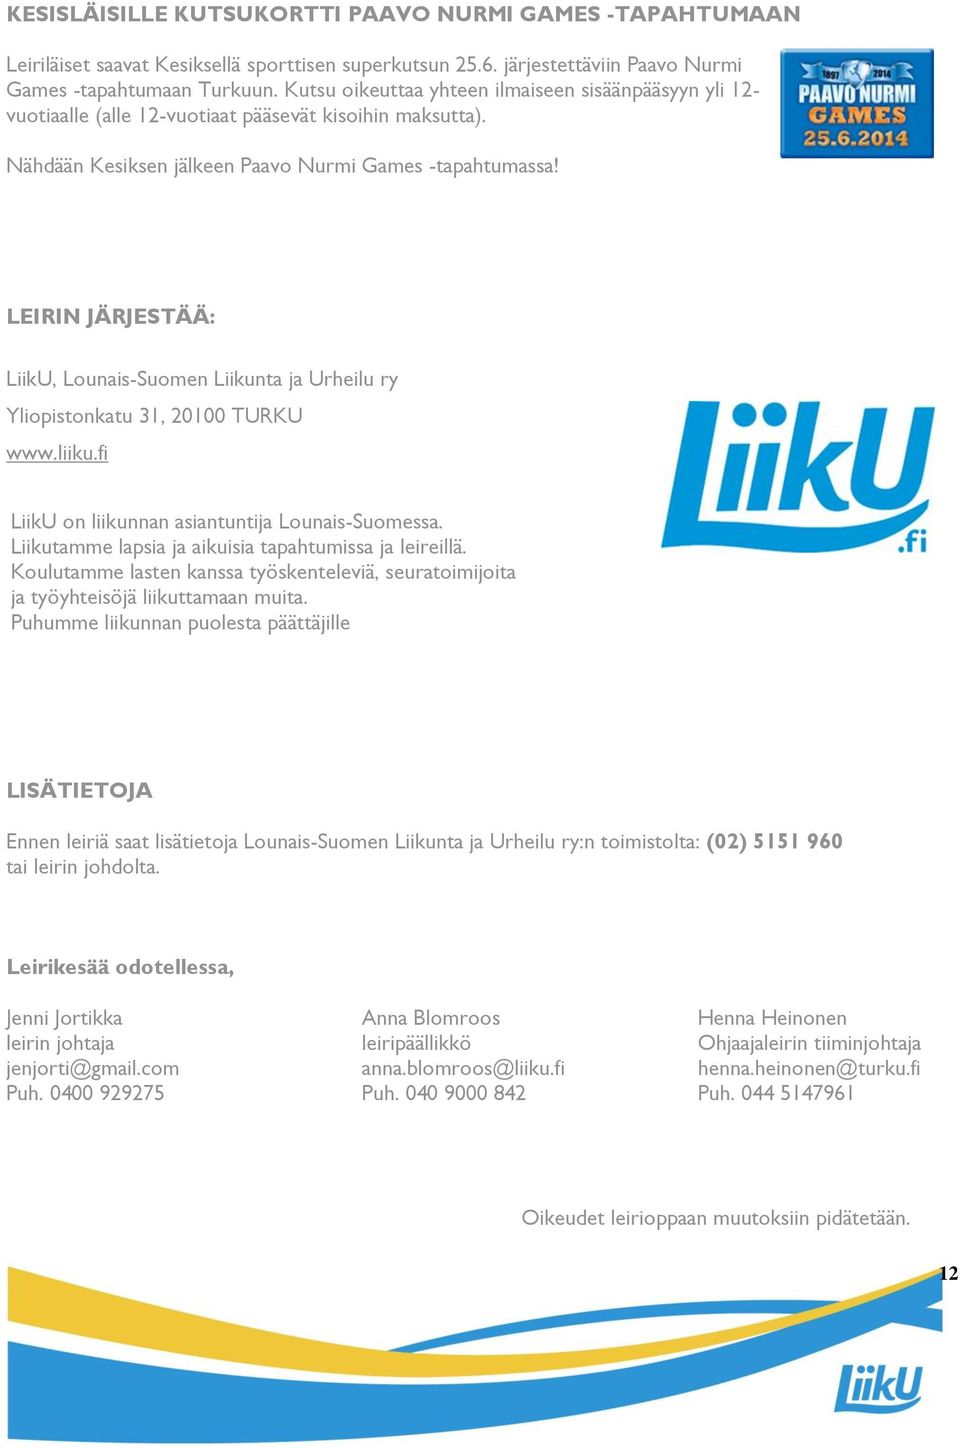 LEIRIN JÄRJESTÄÄ: LiikU, Lounais-Suomen Liikunta ja Urheilu ry Yliopistonkatu 31, 20100 TURKU www.liiku.fi LiikU on liikunnan asiantuntija Lounais-Suomessa.